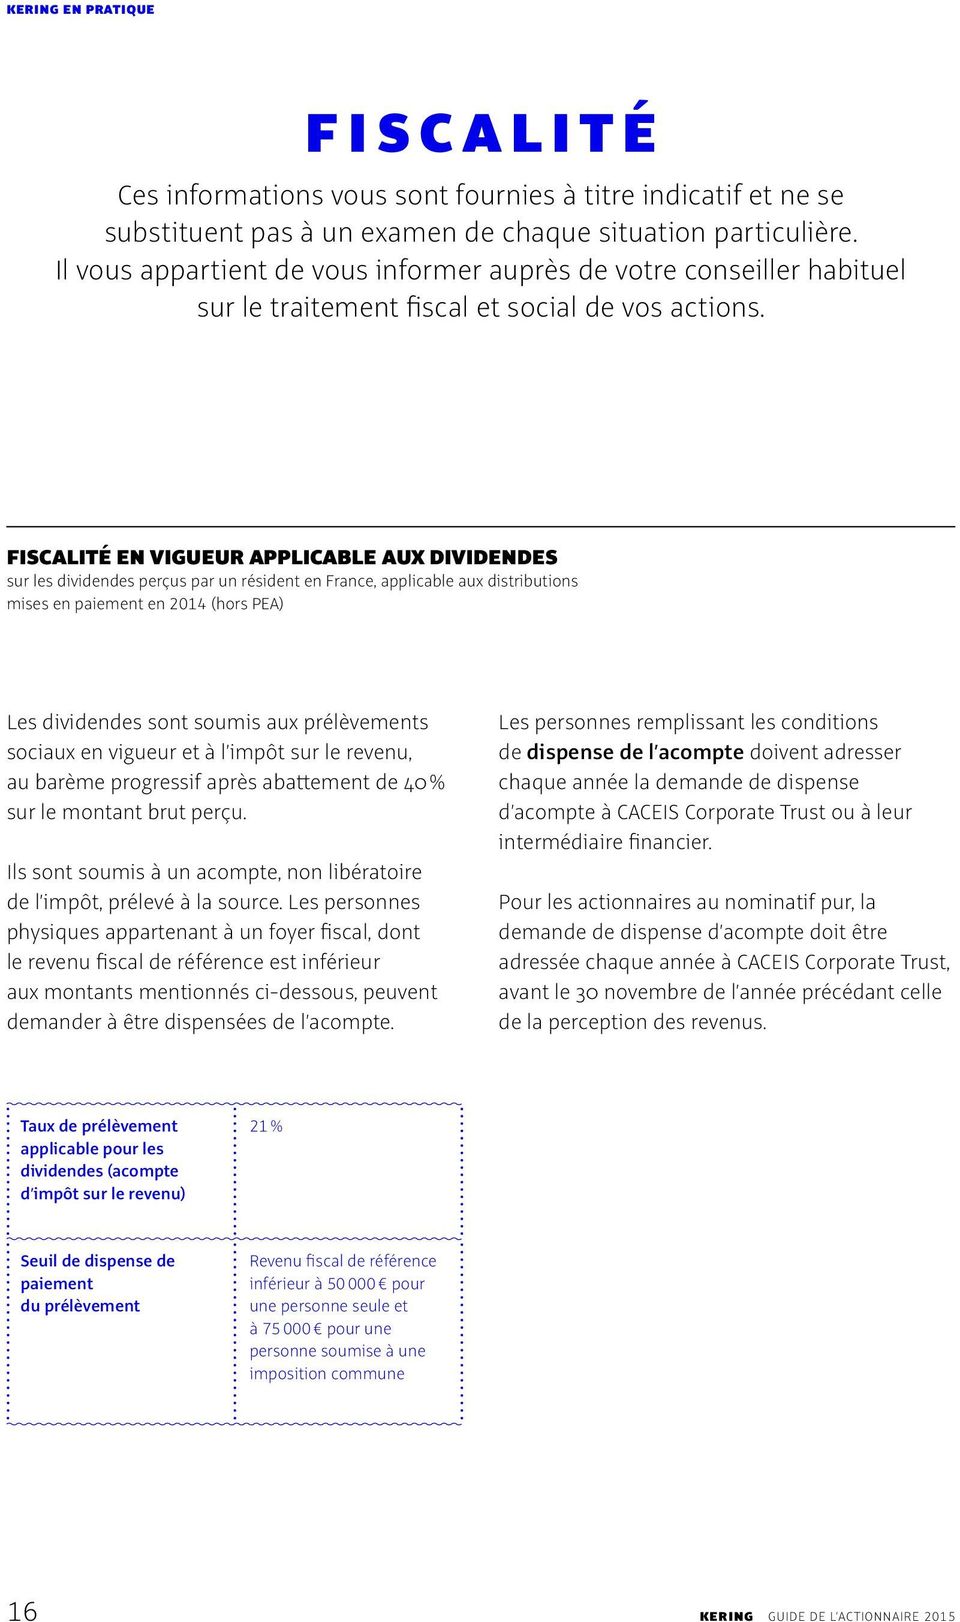 FISCALITÉ EN VIGUEUR APPLICABLE AUX DIVIDENDES sur les dividendes perçus par un résident en France, applicable aux distributions mises en paiement en 2014 (hors PEA) Les dividendes sont soumis aux